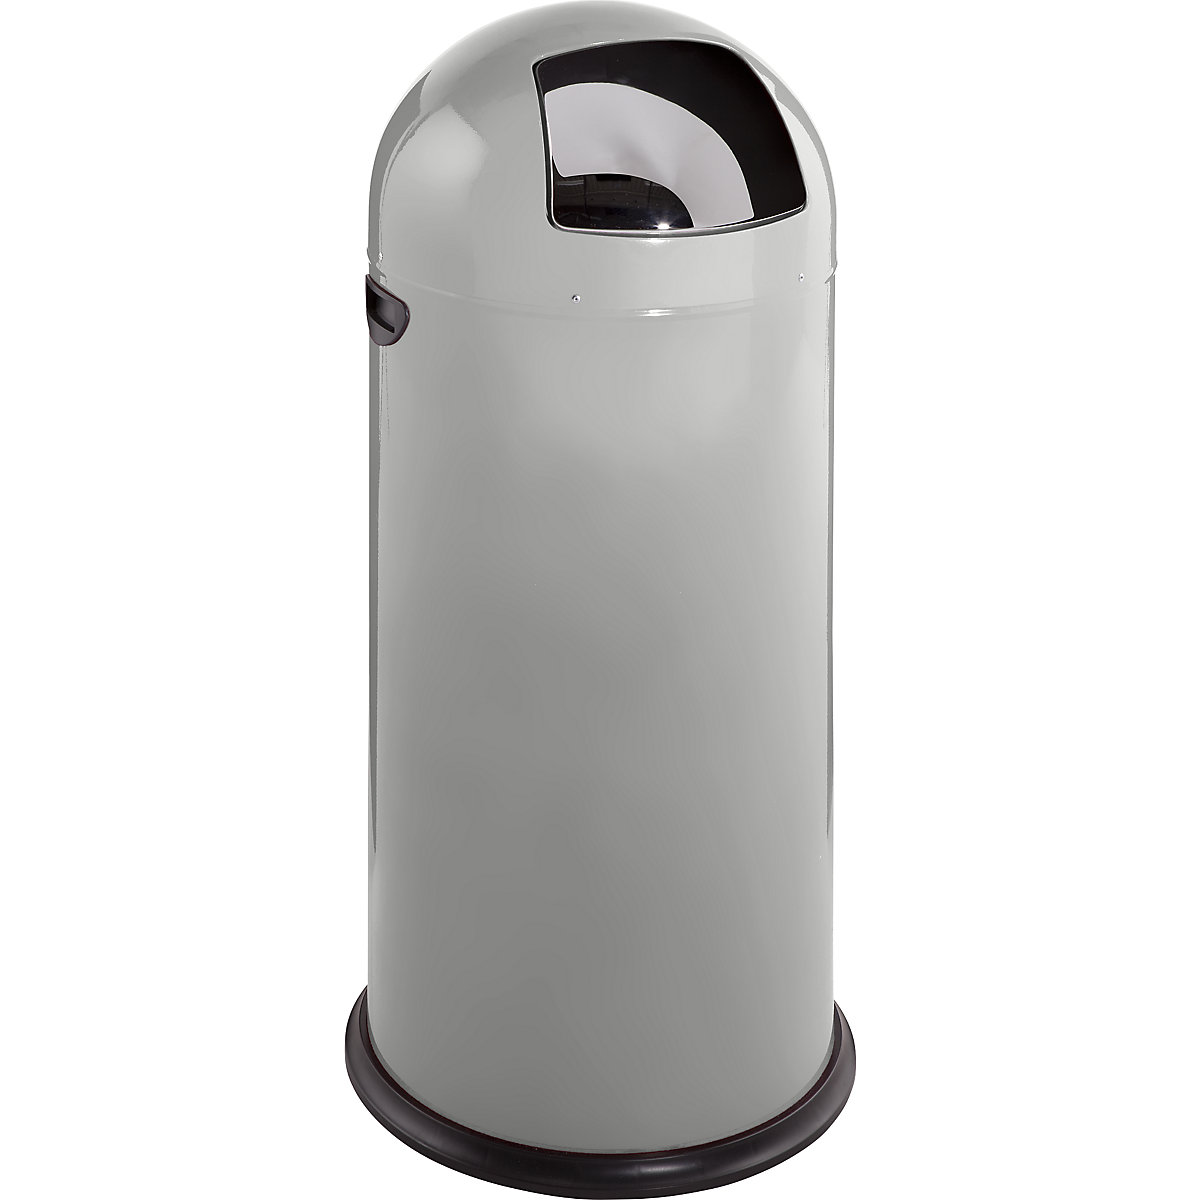 VAR – Odpadkový koš s funkcí Push, objem 52 l, výška 890 mm, stříbrná